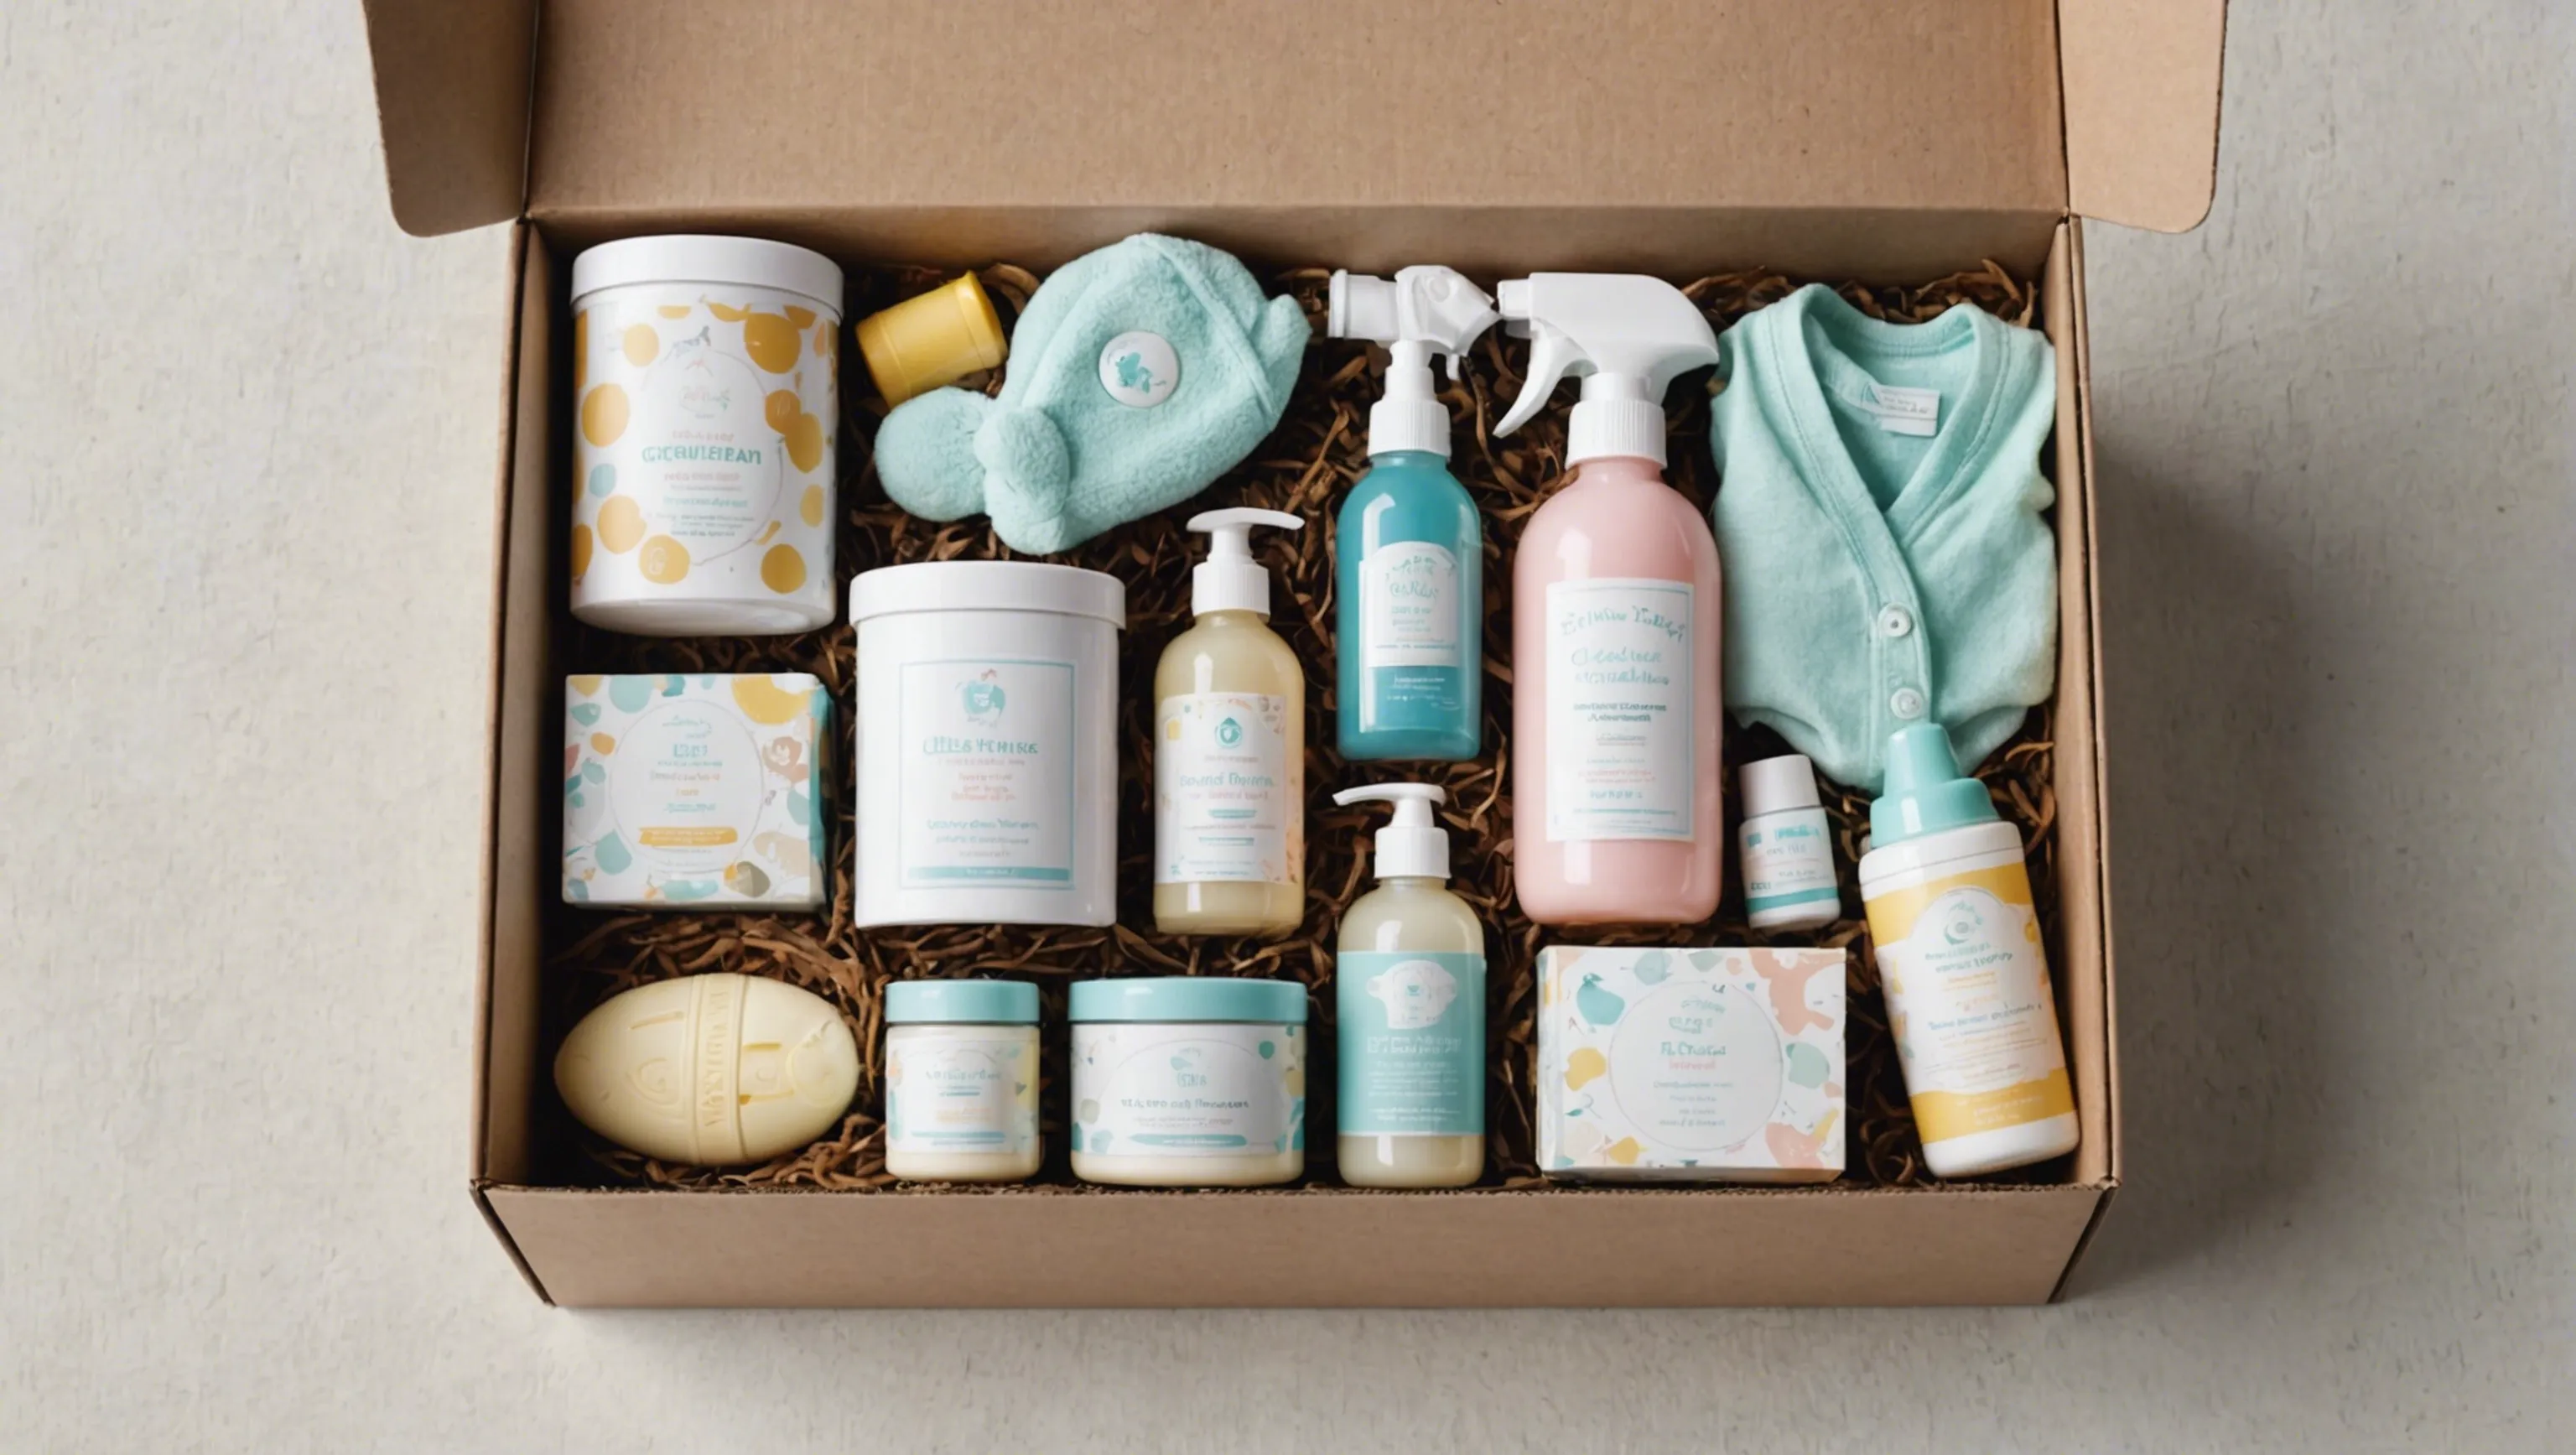 Une box bébé remplie de produits pour les nouveaux parents